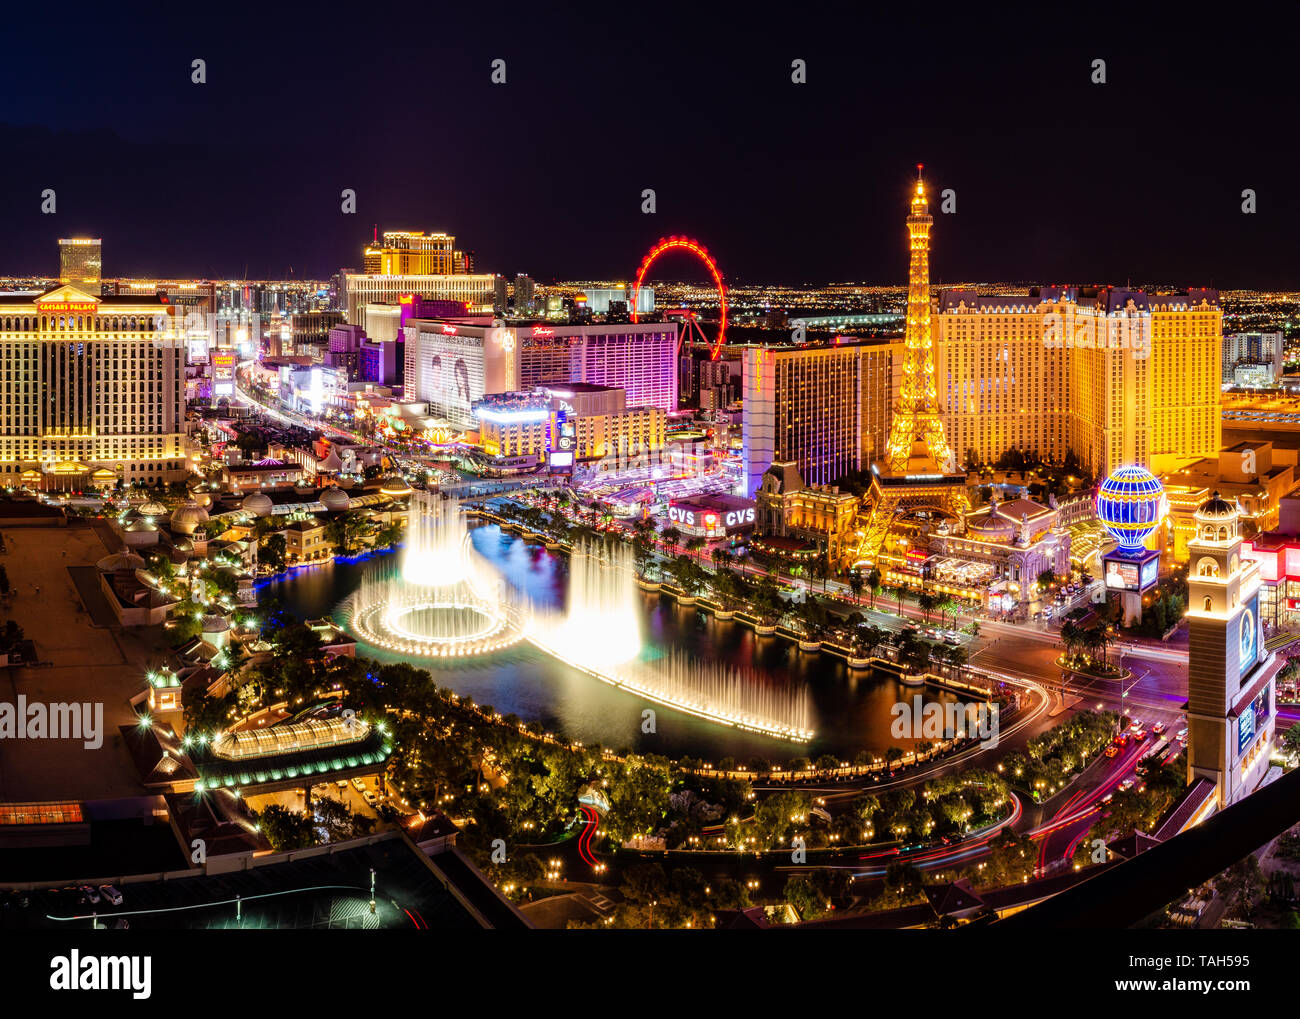 Las Vegas skyline featuring the Bellagio Fountains, Paris Las Vegas, Linq High Roller & Las Vegas Strip in Las Vegas, Nevada, USA Stock Photo